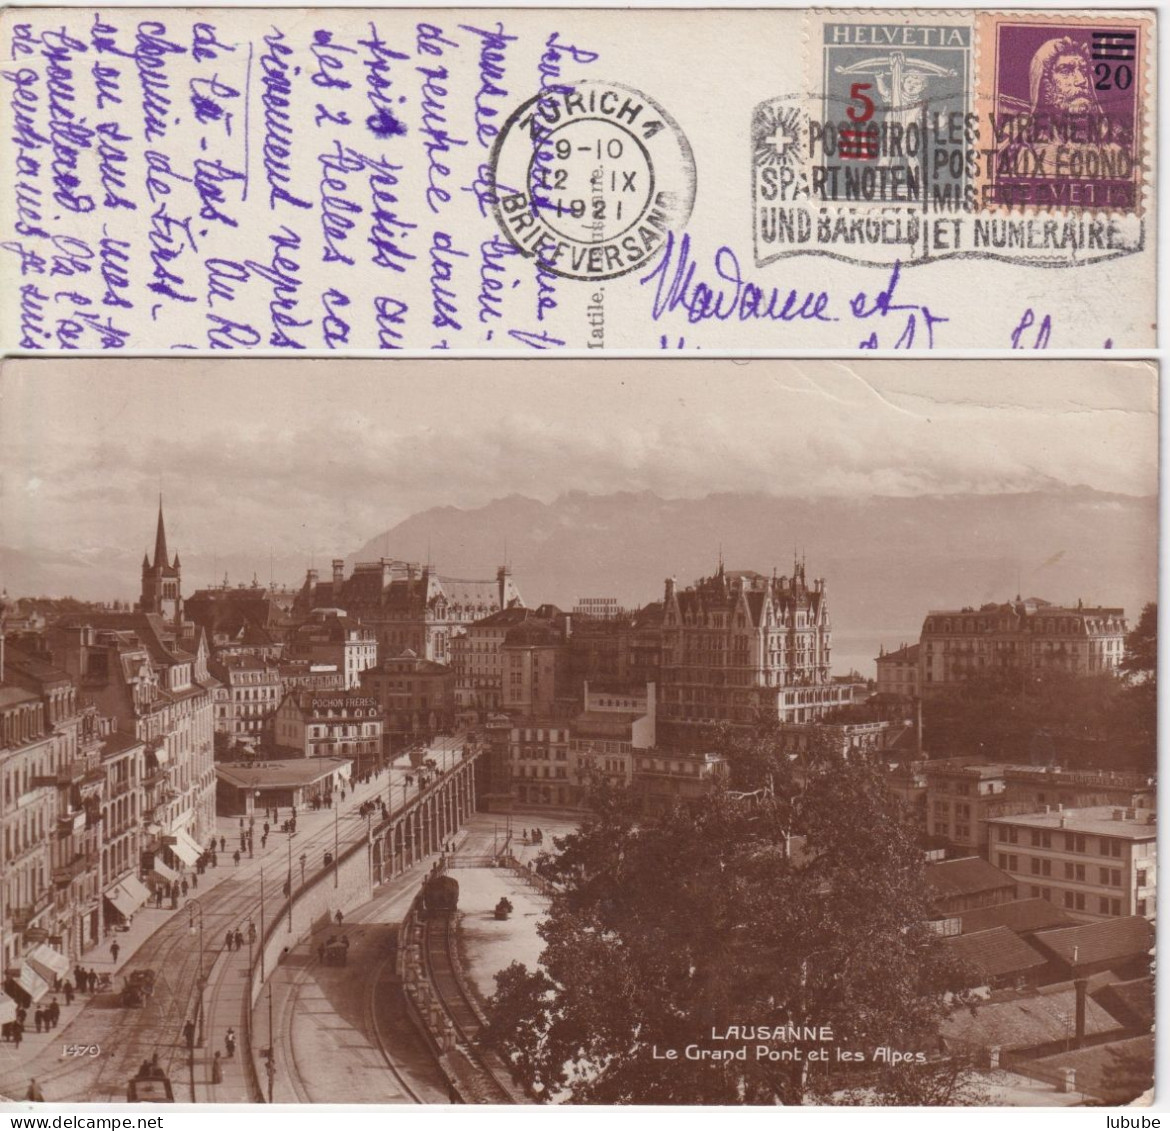 AK  "Lausanne - Le Grand Pont"  Zürich - Bruxelles        1921 - Covers & Documents